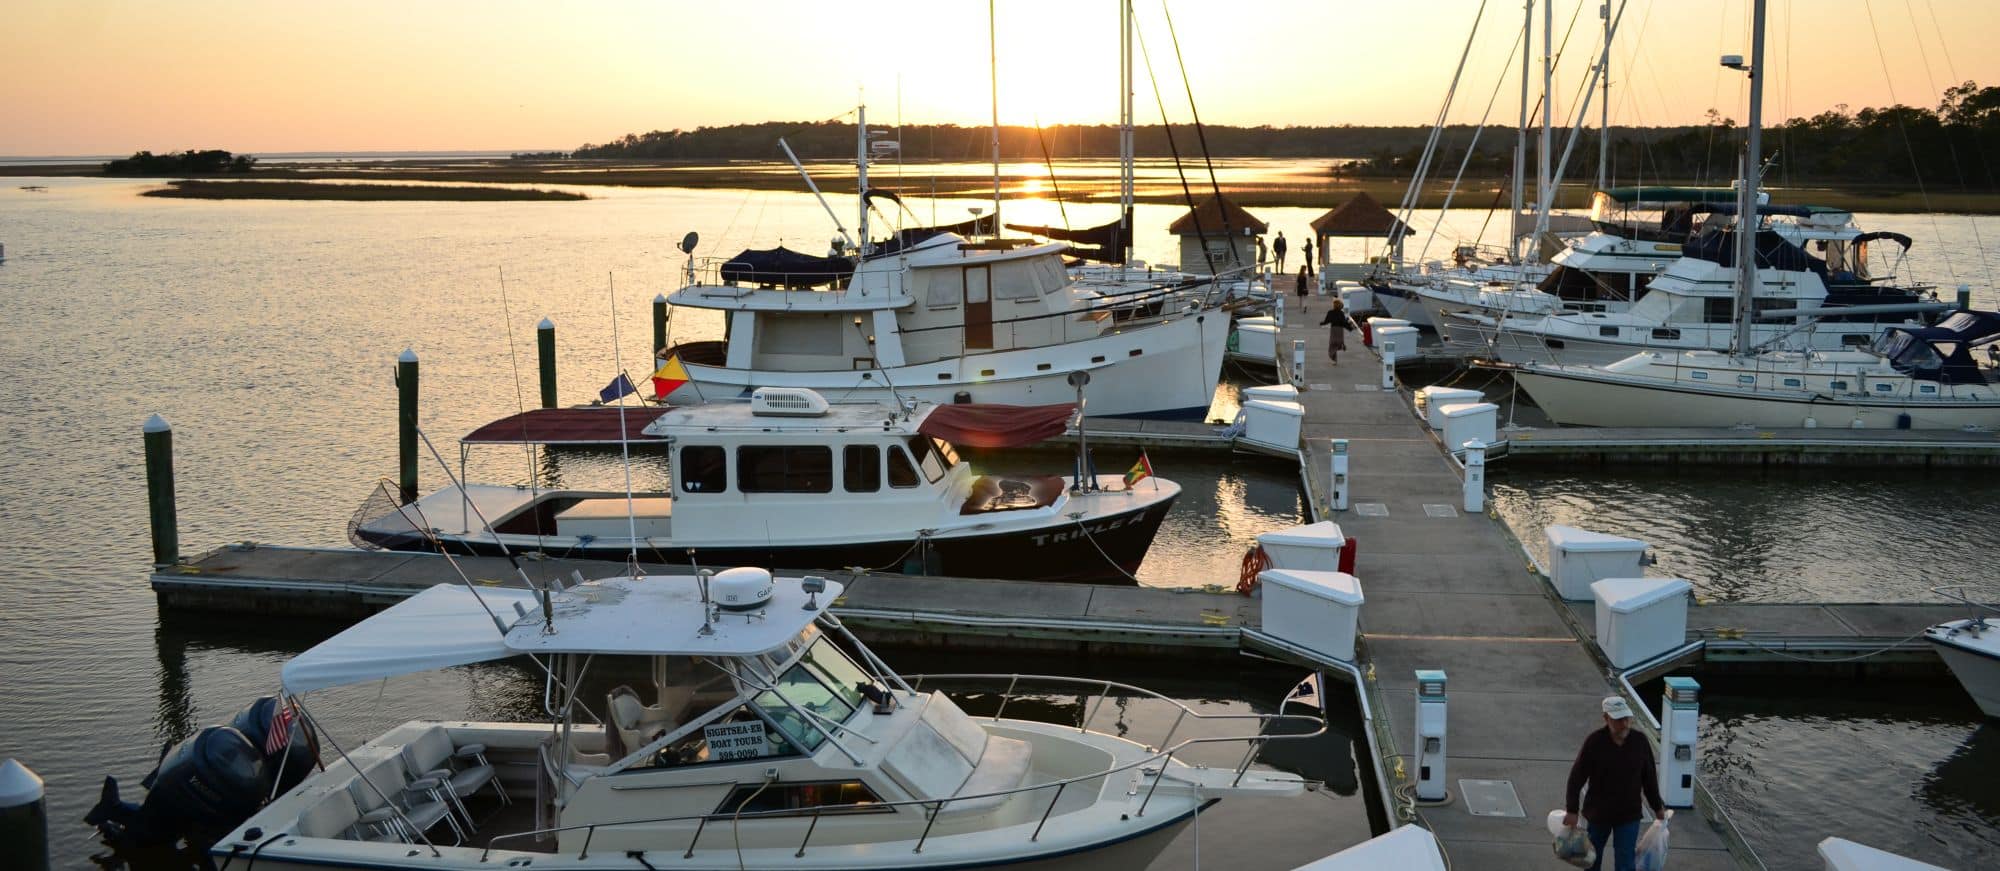 Boats docked at The Landings marina at sunrise.